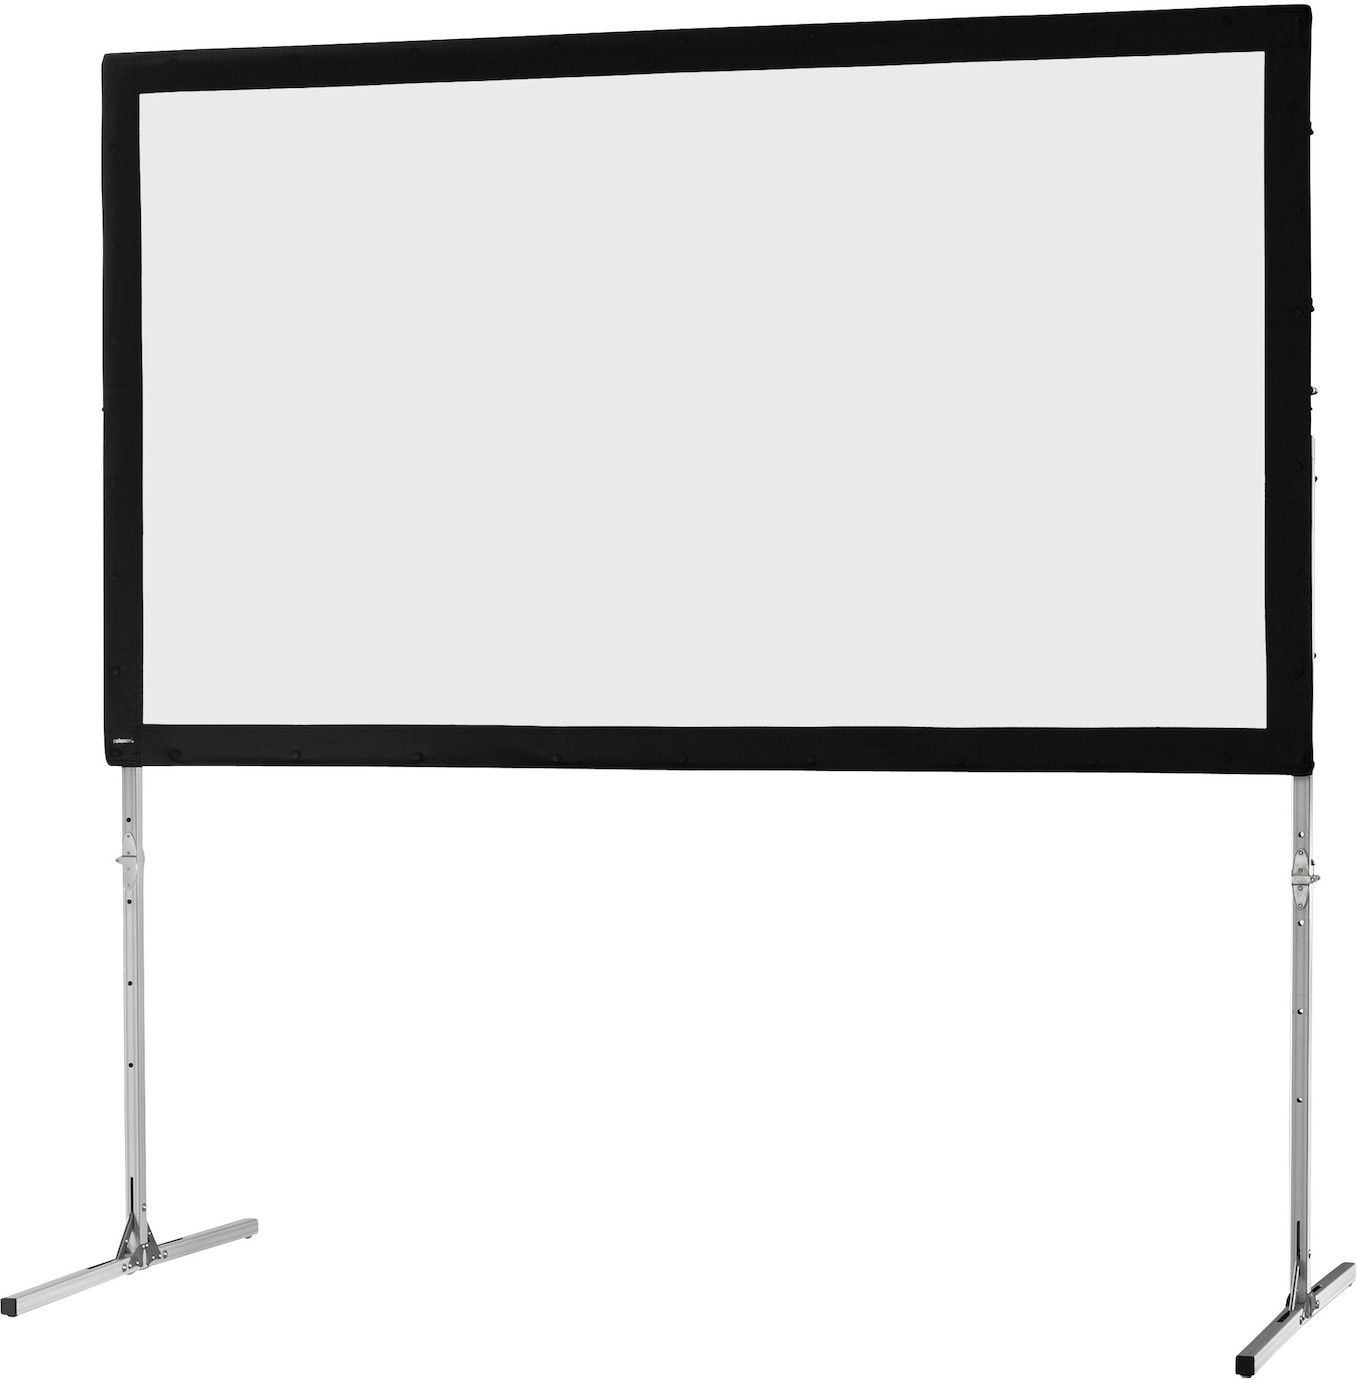 Ecran sur cadre celexon « Mobil Expert » 305 x 172 cm, projection de face